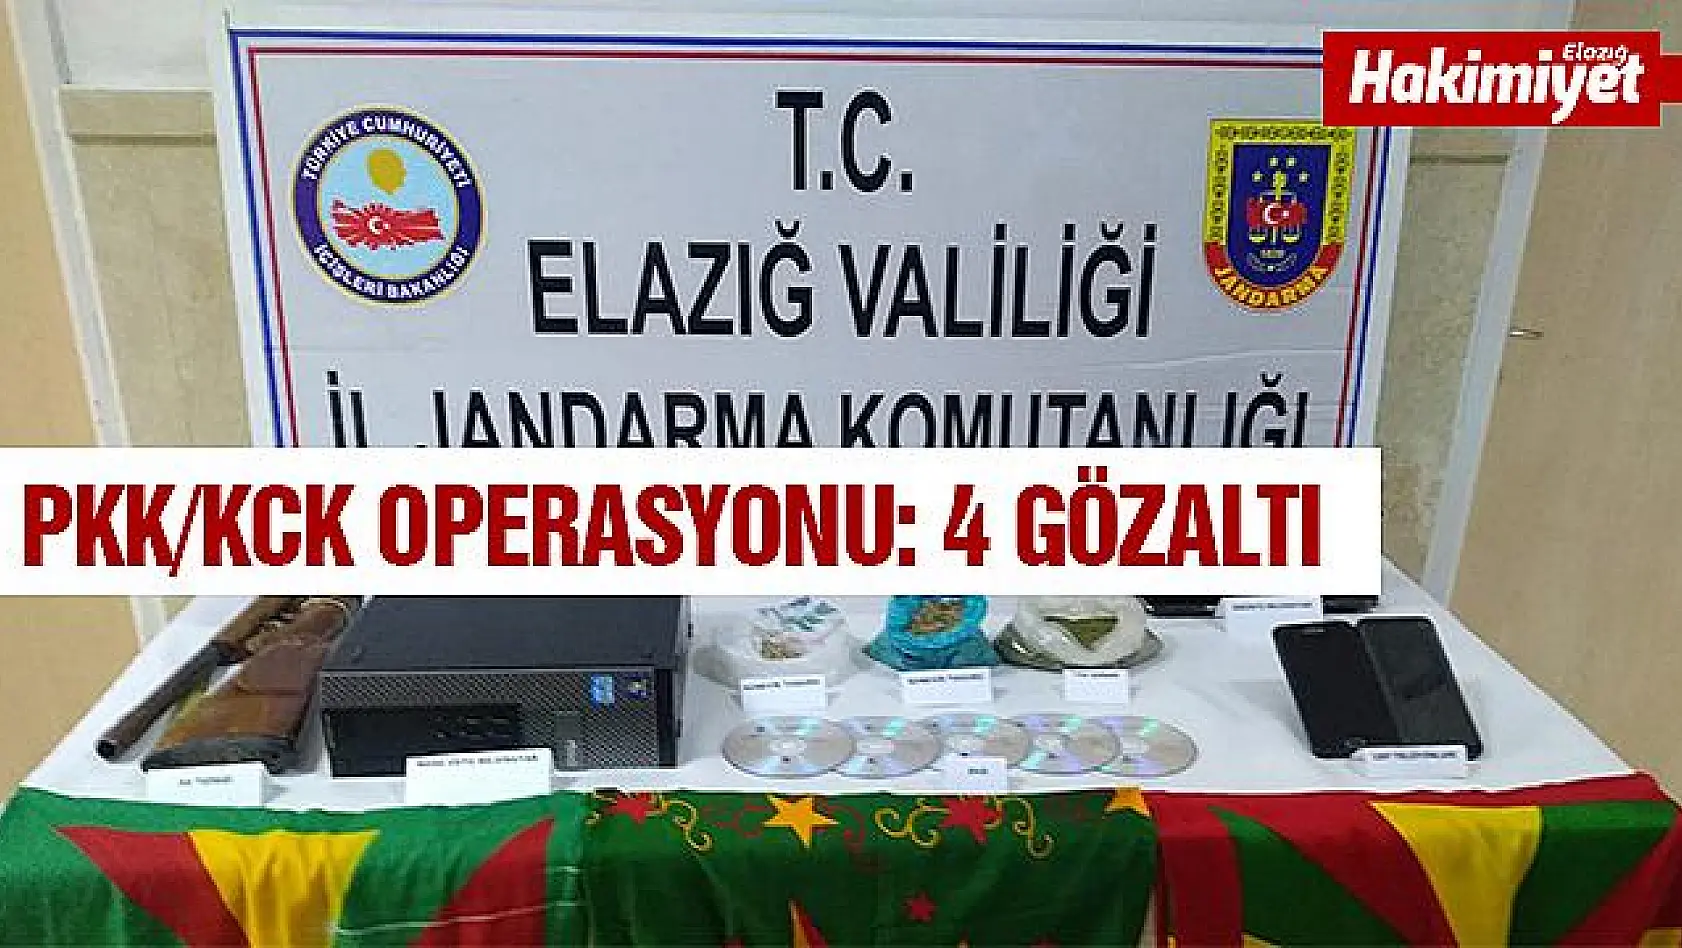 Elazığ'da PKK/KCK operasyonu: 4 gözaltı